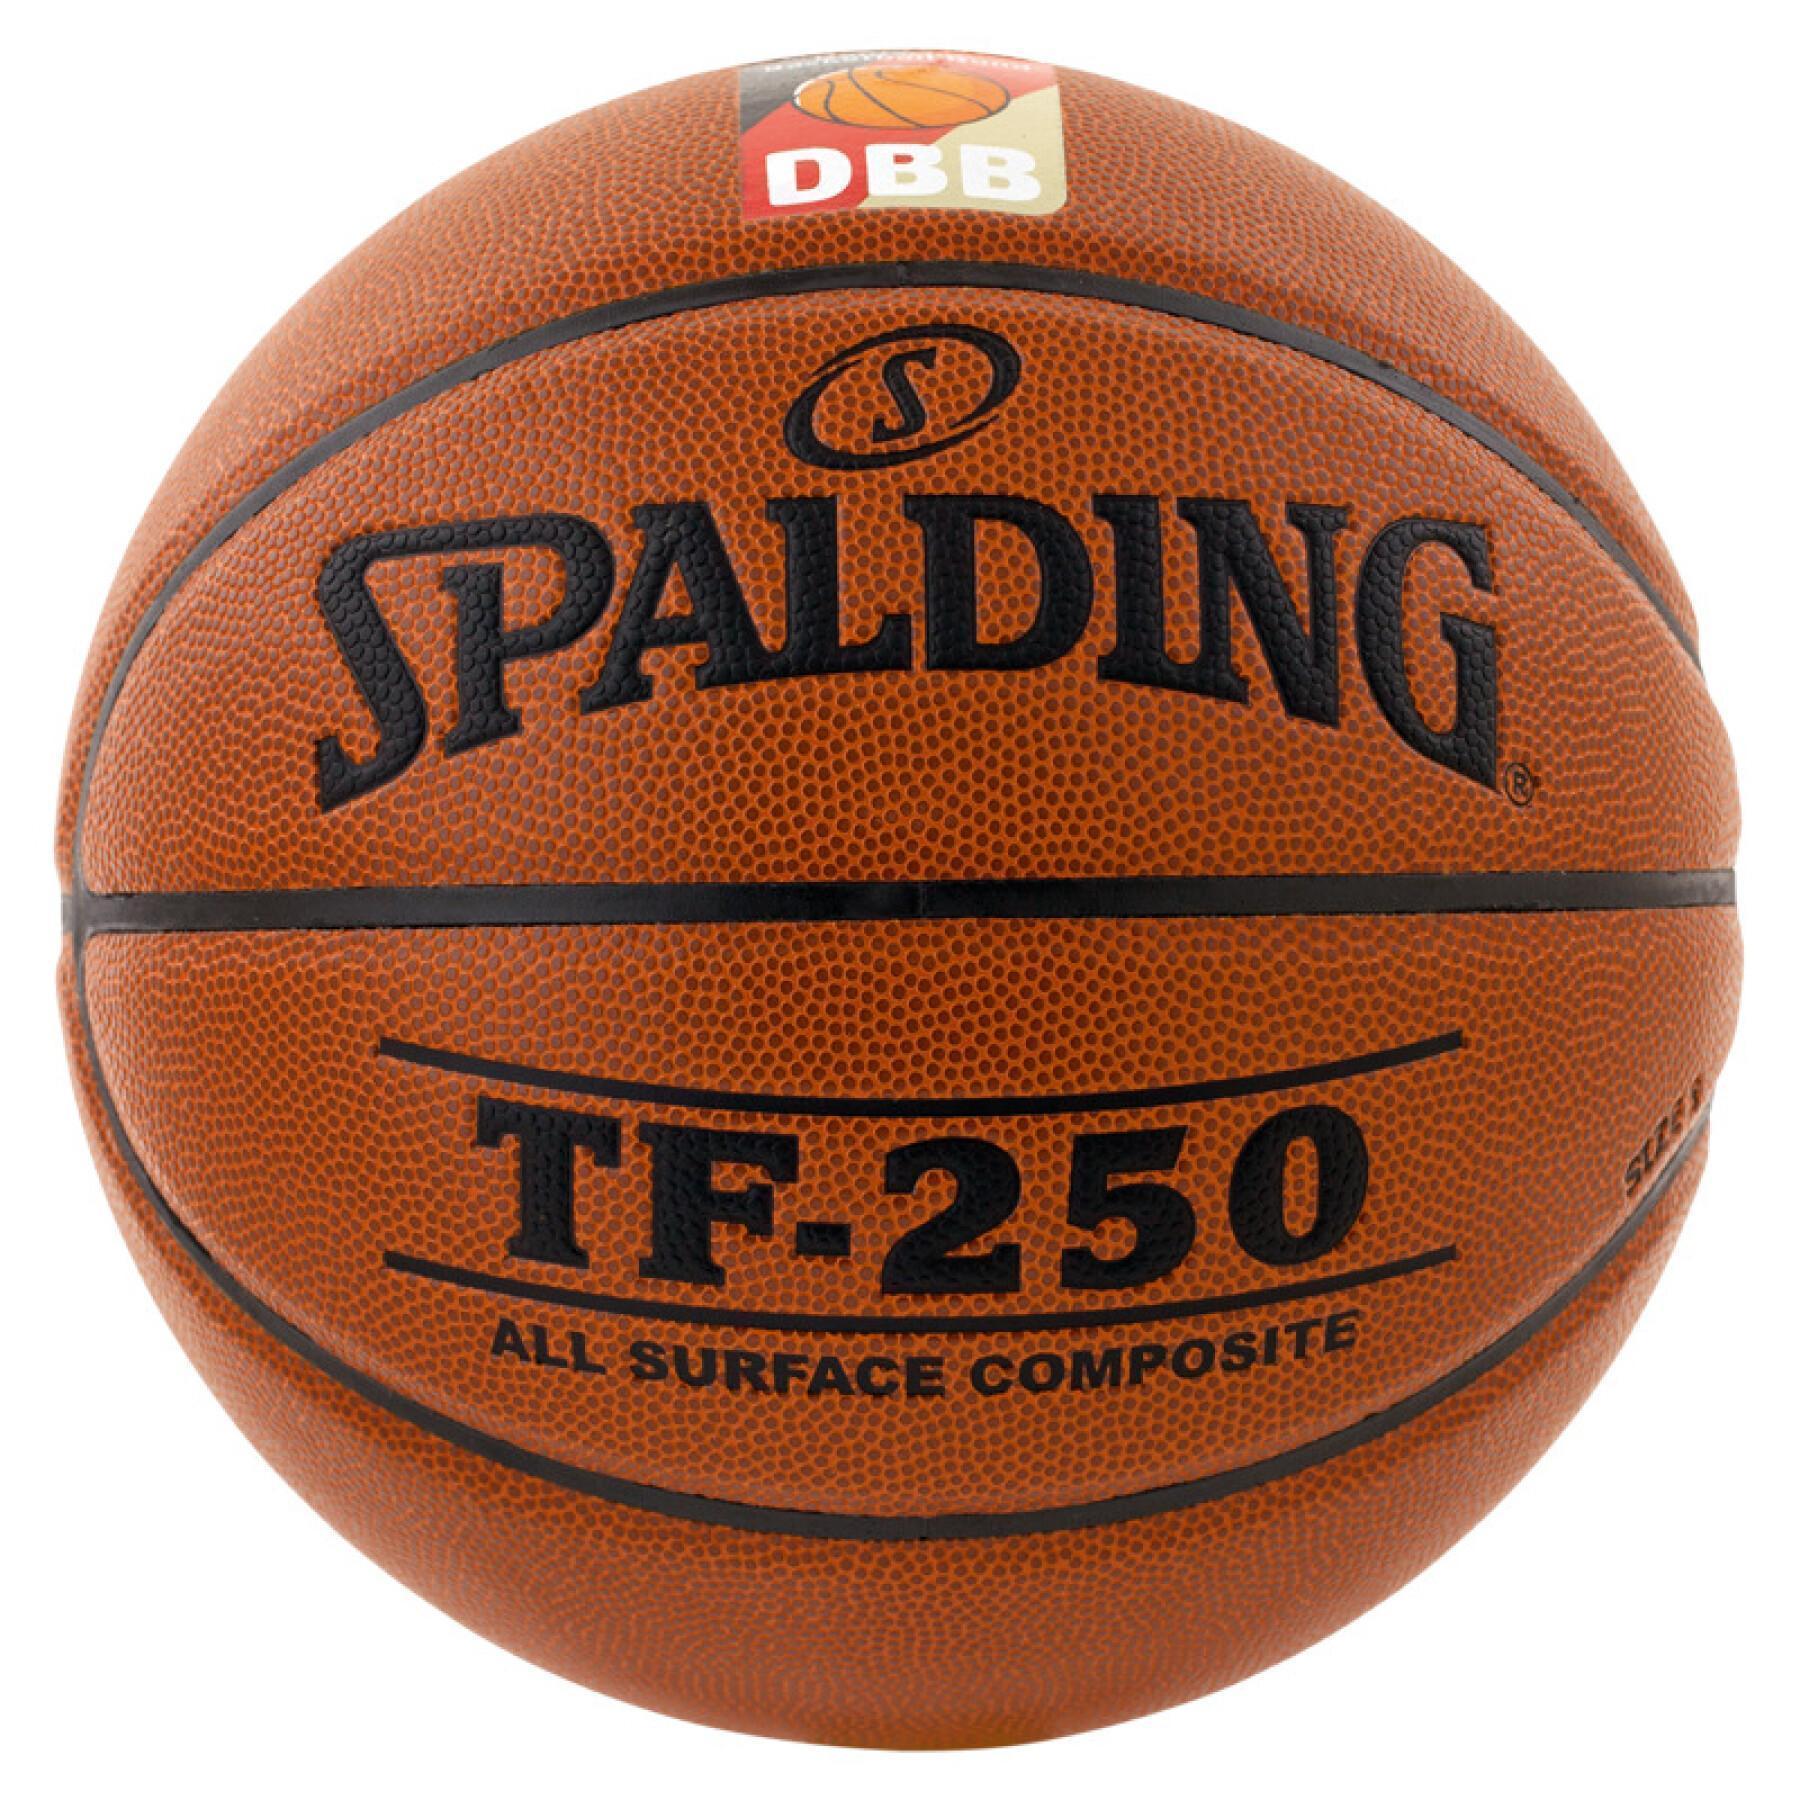 Ballon Spalding DBB Tf250 (74-594z)